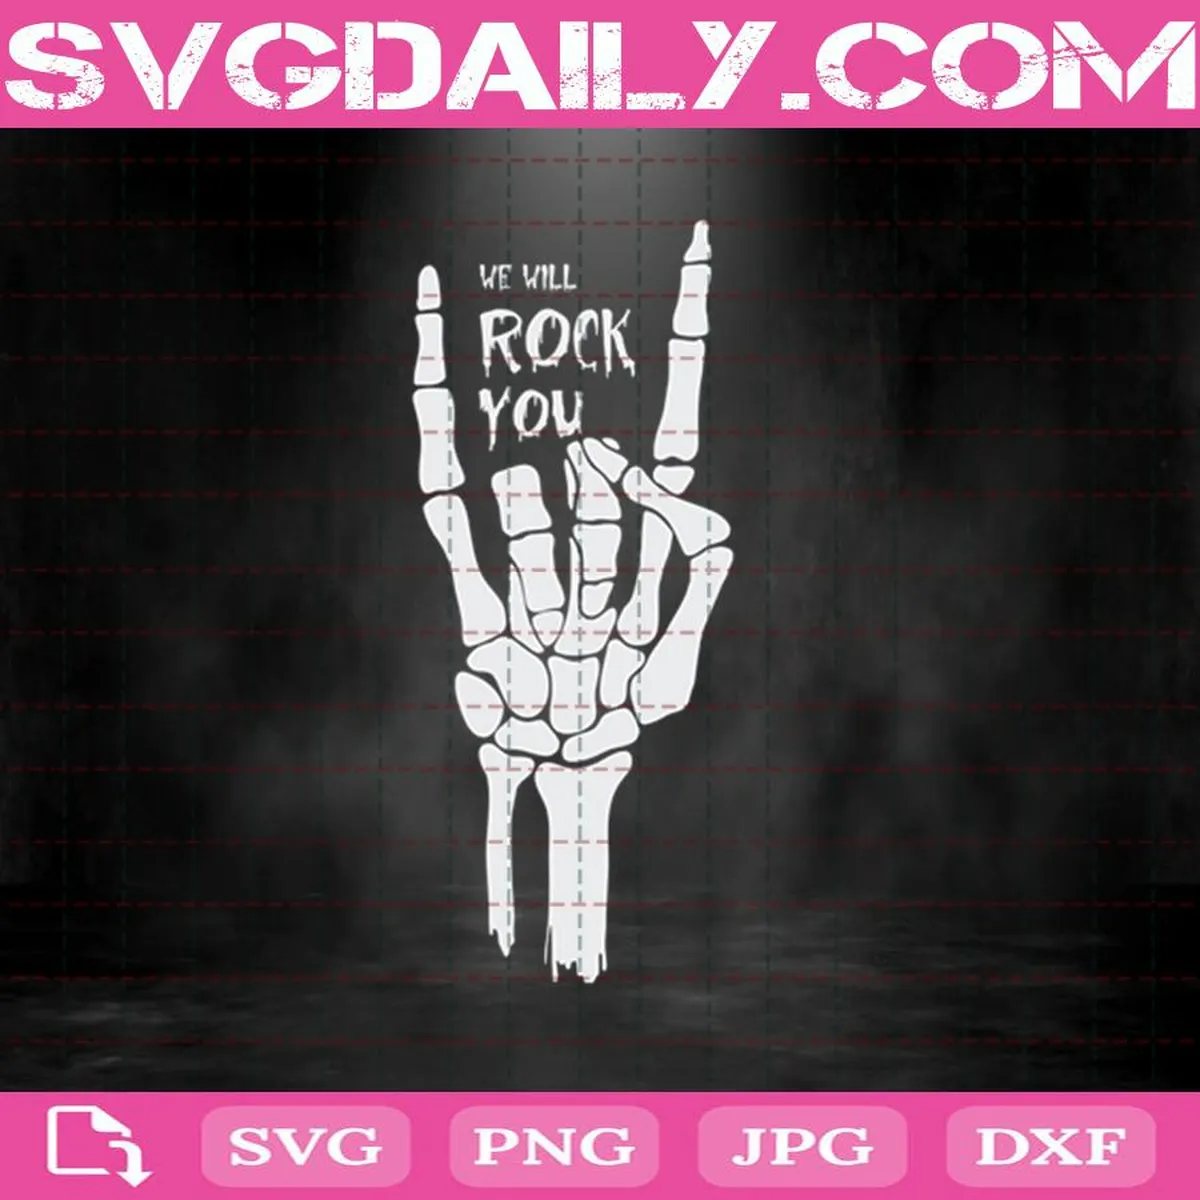 We Will Rock You Svg, Rock Svg, Halloween Svg, Skeleton Svg, Svg Png Dxf Eps Cut File Instant Download